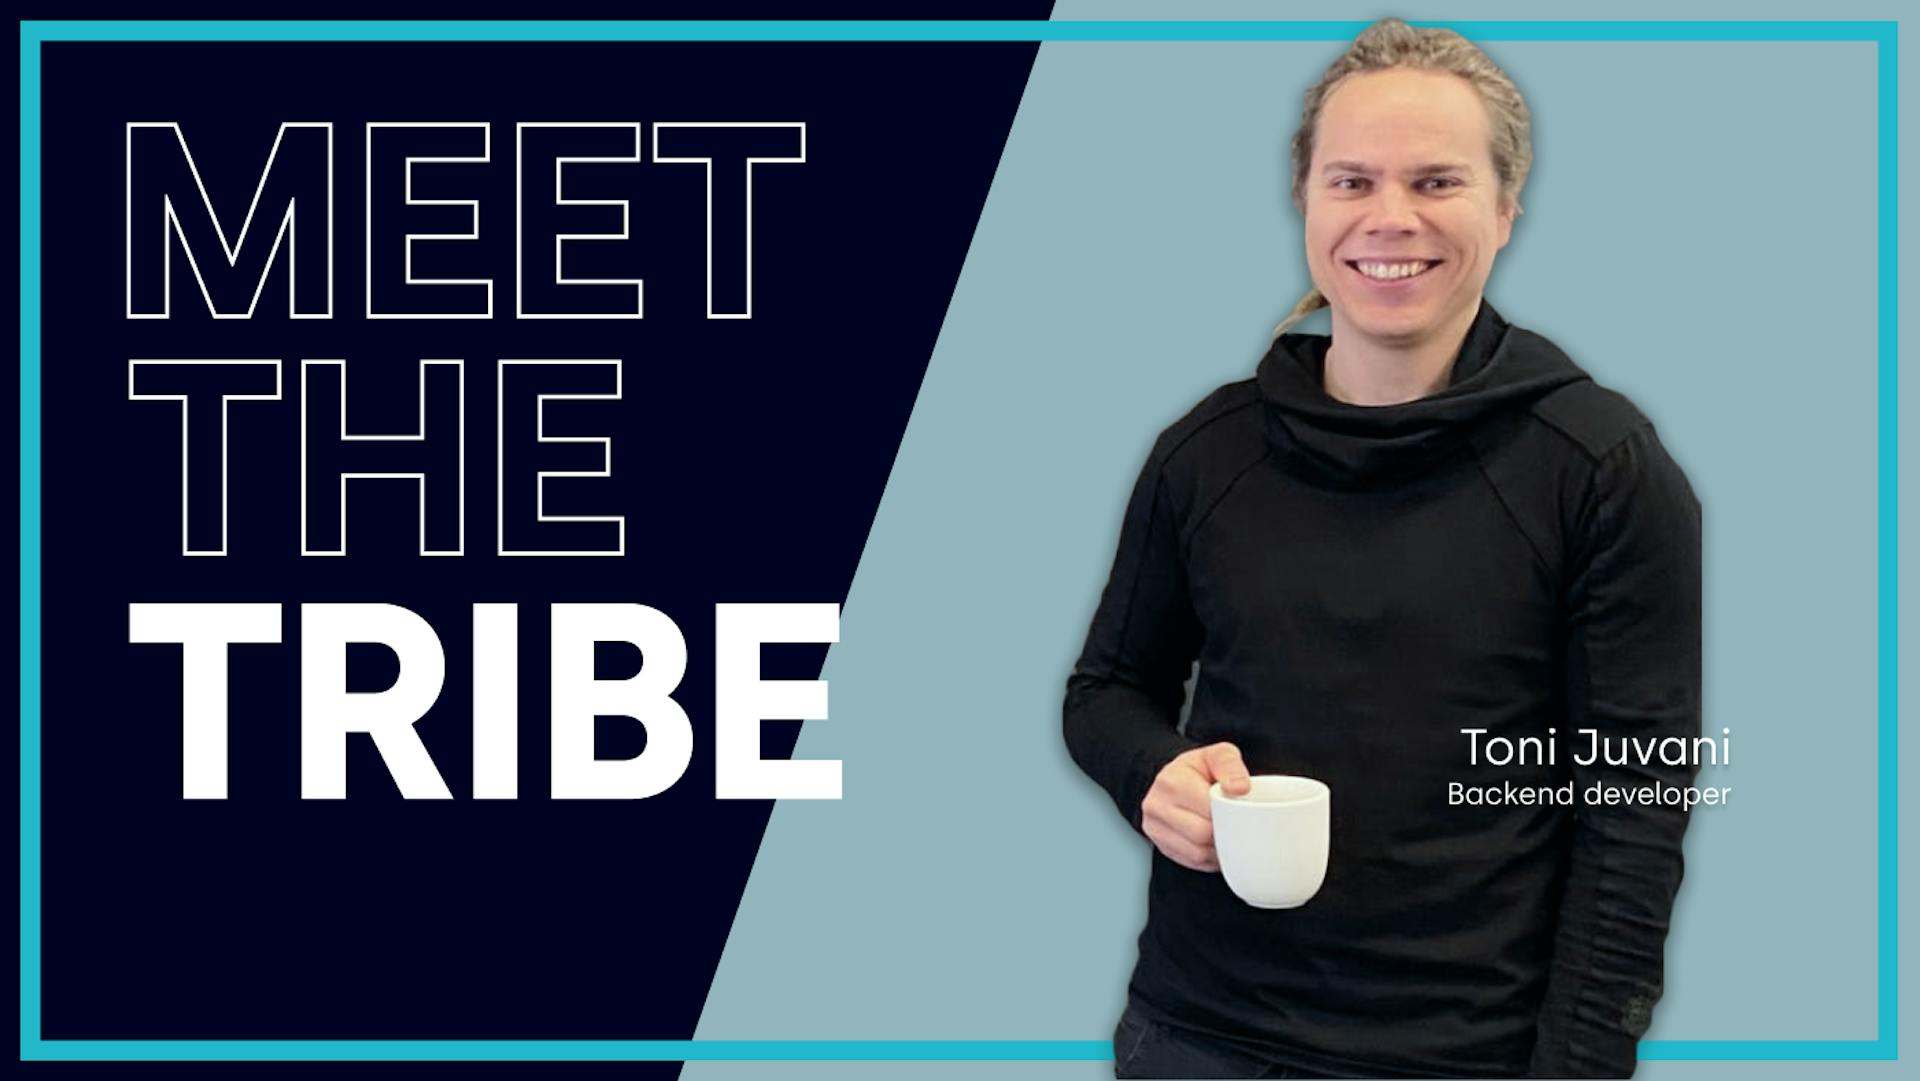 Meet the Tribe - Toni